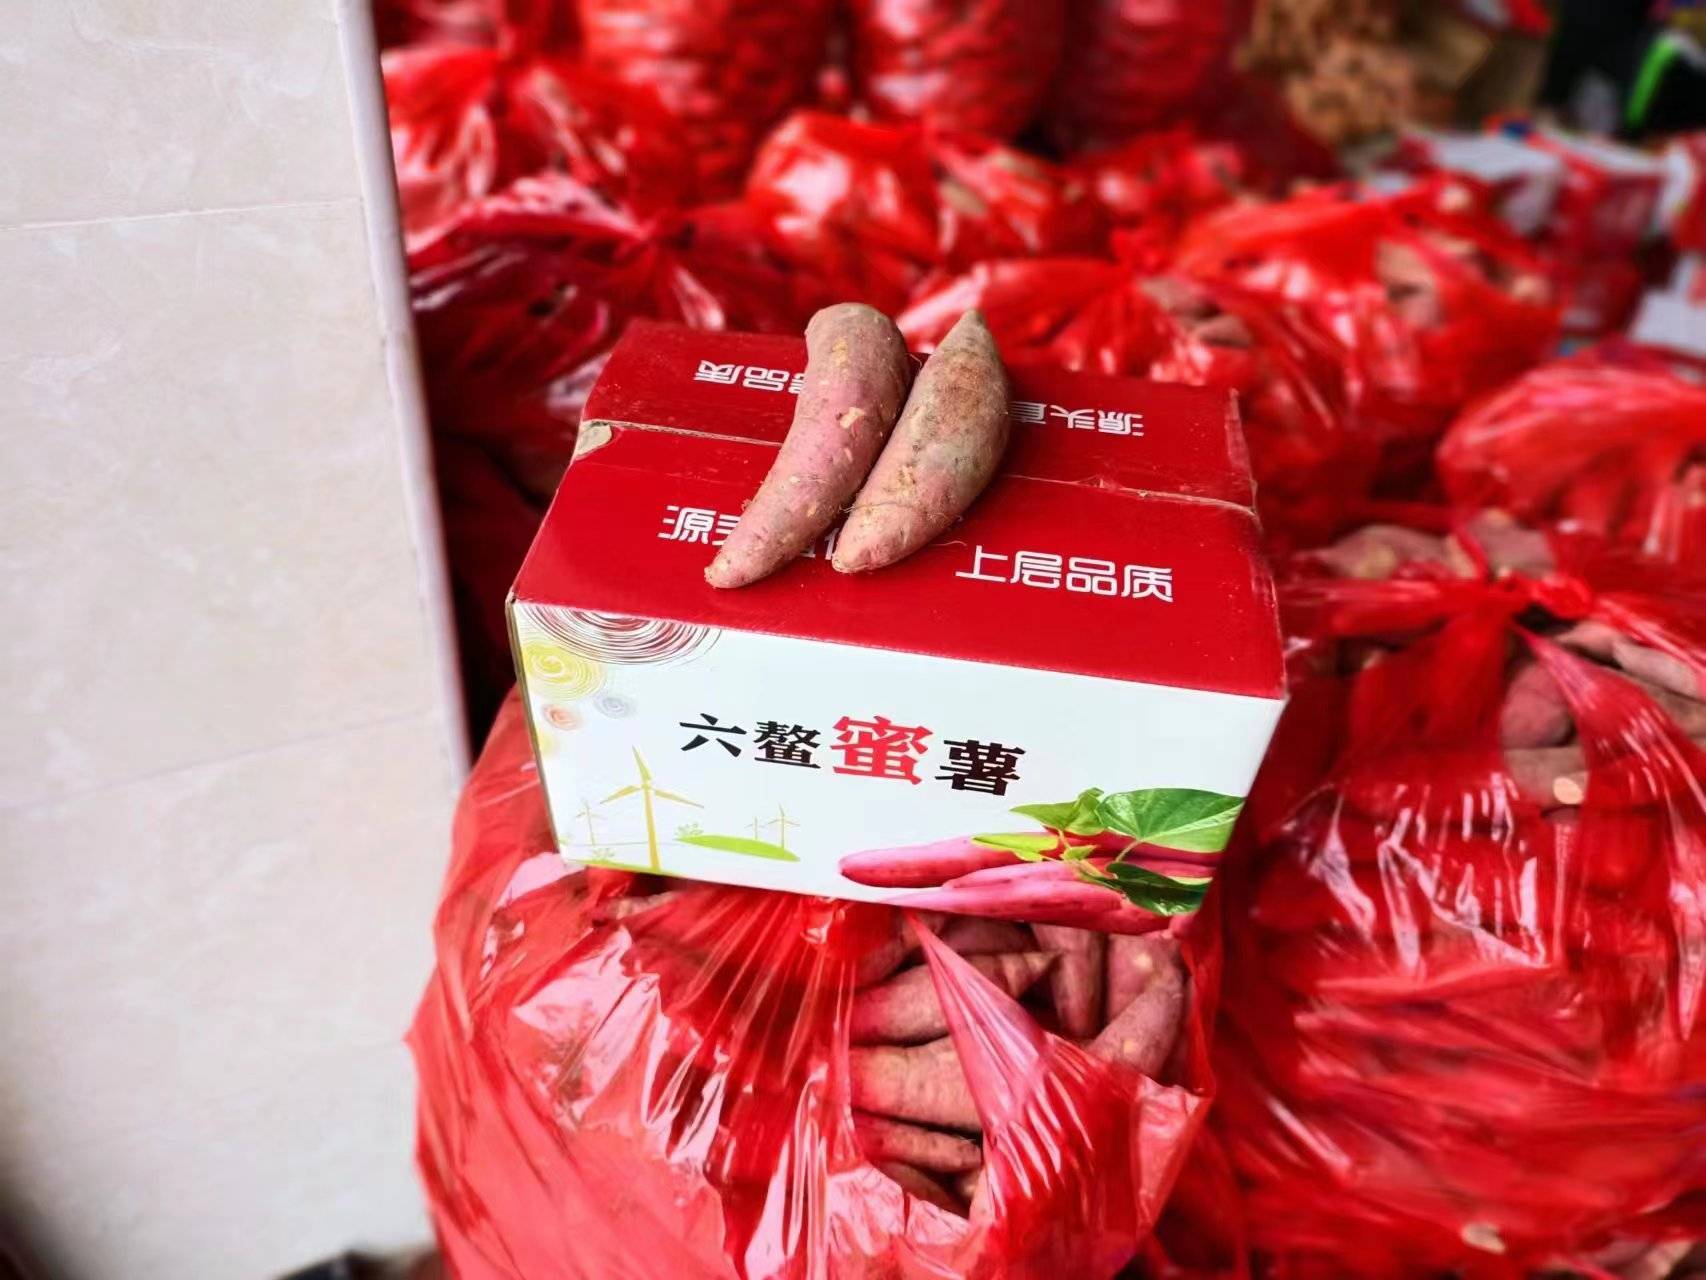 福建漳浦六鳌地瓜小果5斤装小蜜薯软糯香甜农家自产